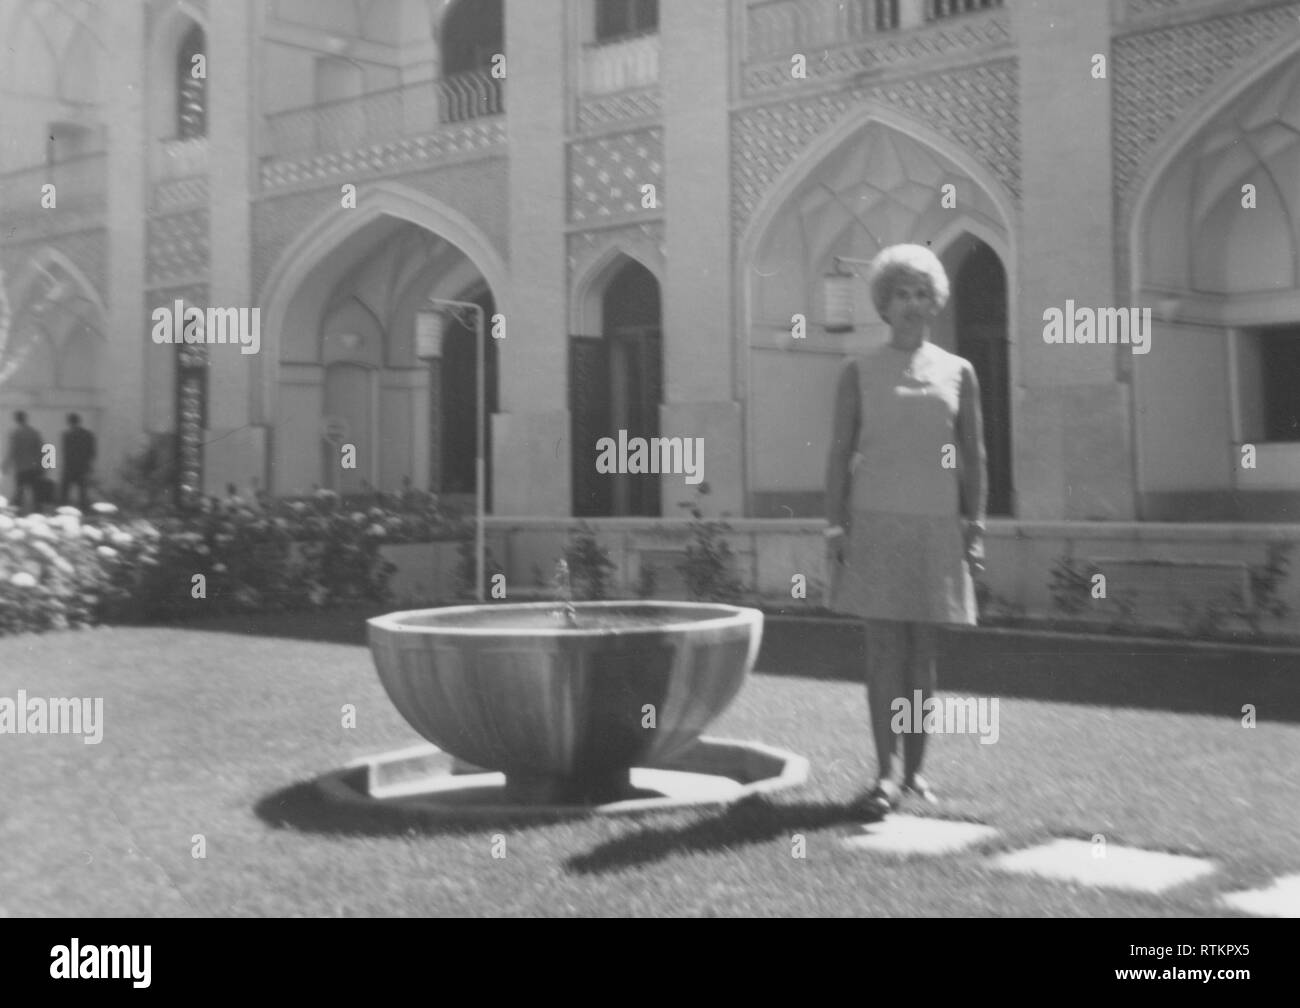 Amerikanische Frau Shopping und während einer Aramco Frauengruppe Shopping und kulturelle Reise nach Isfahan, Iran auf Tournee in den 1970er Jahren Stockfoto